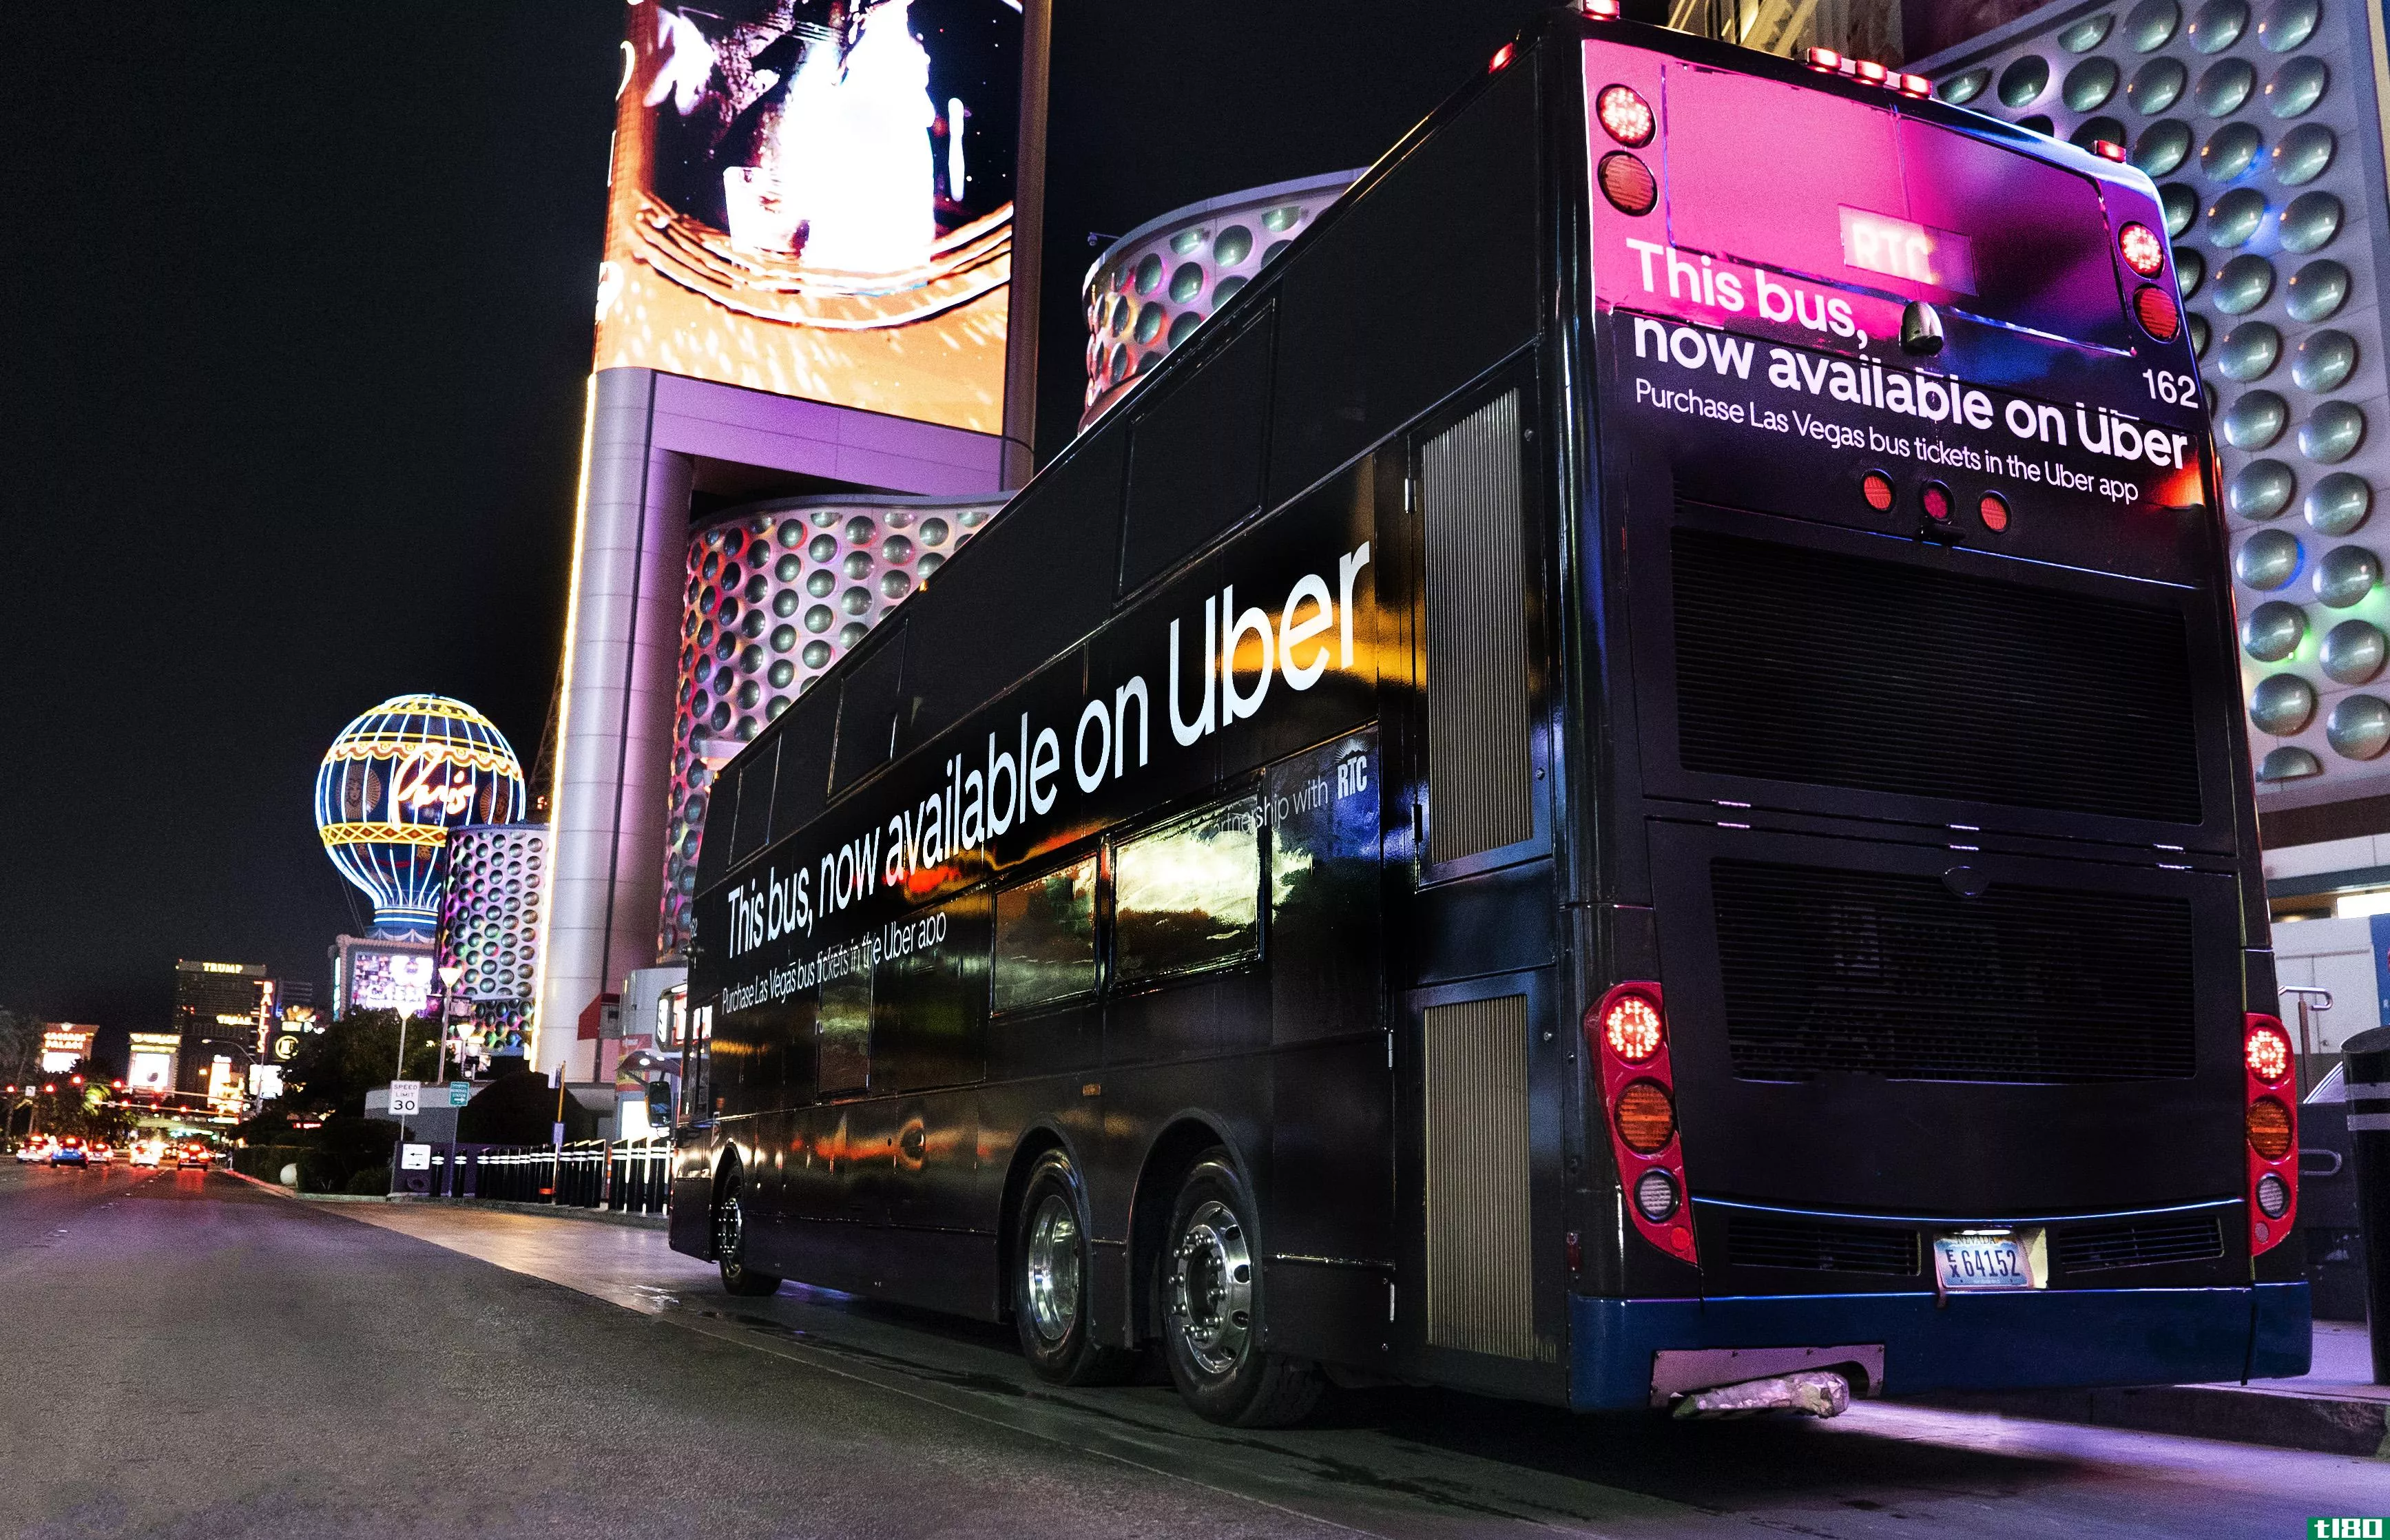 拉斯维加斯的uber用户将可以使用该应用乘坐公共巴士